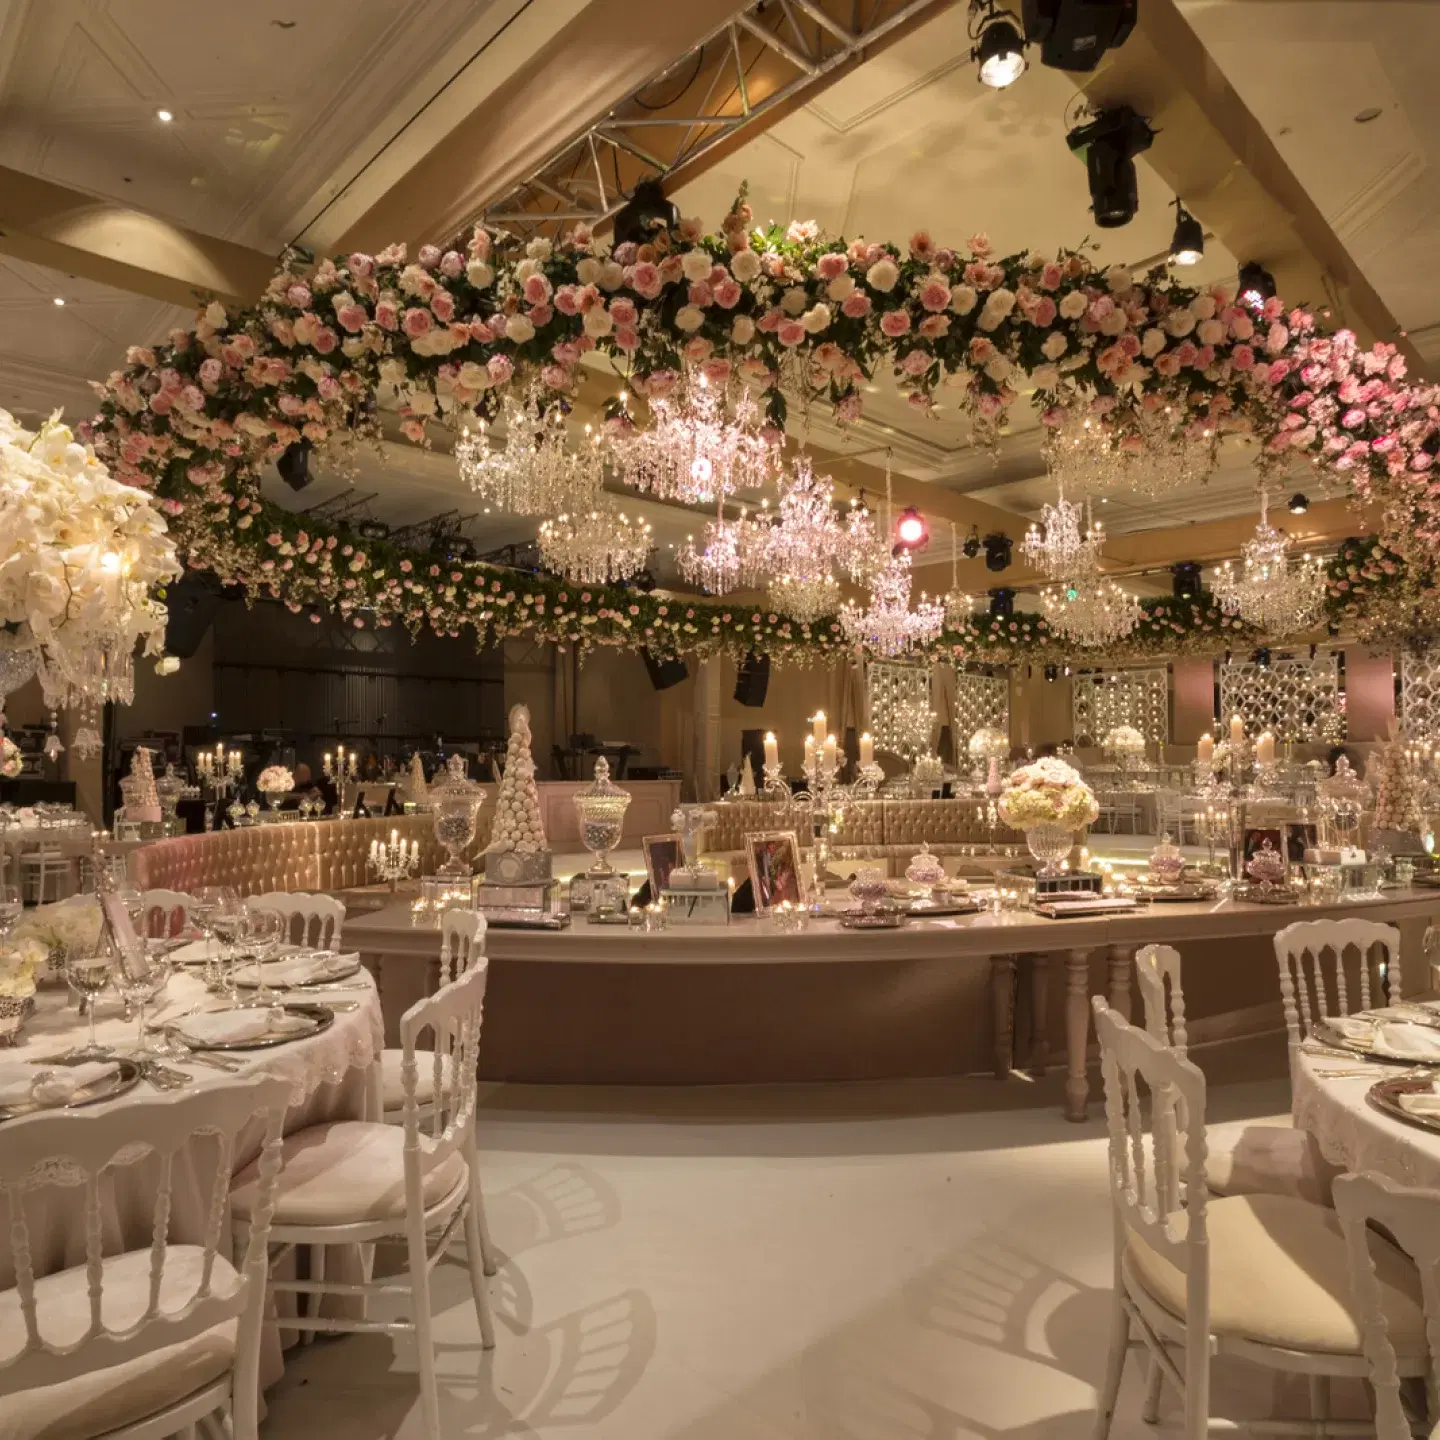 Salon de evenimente elegant de la Weddingo.ro, ideal pentru nunți și recepții de lux.